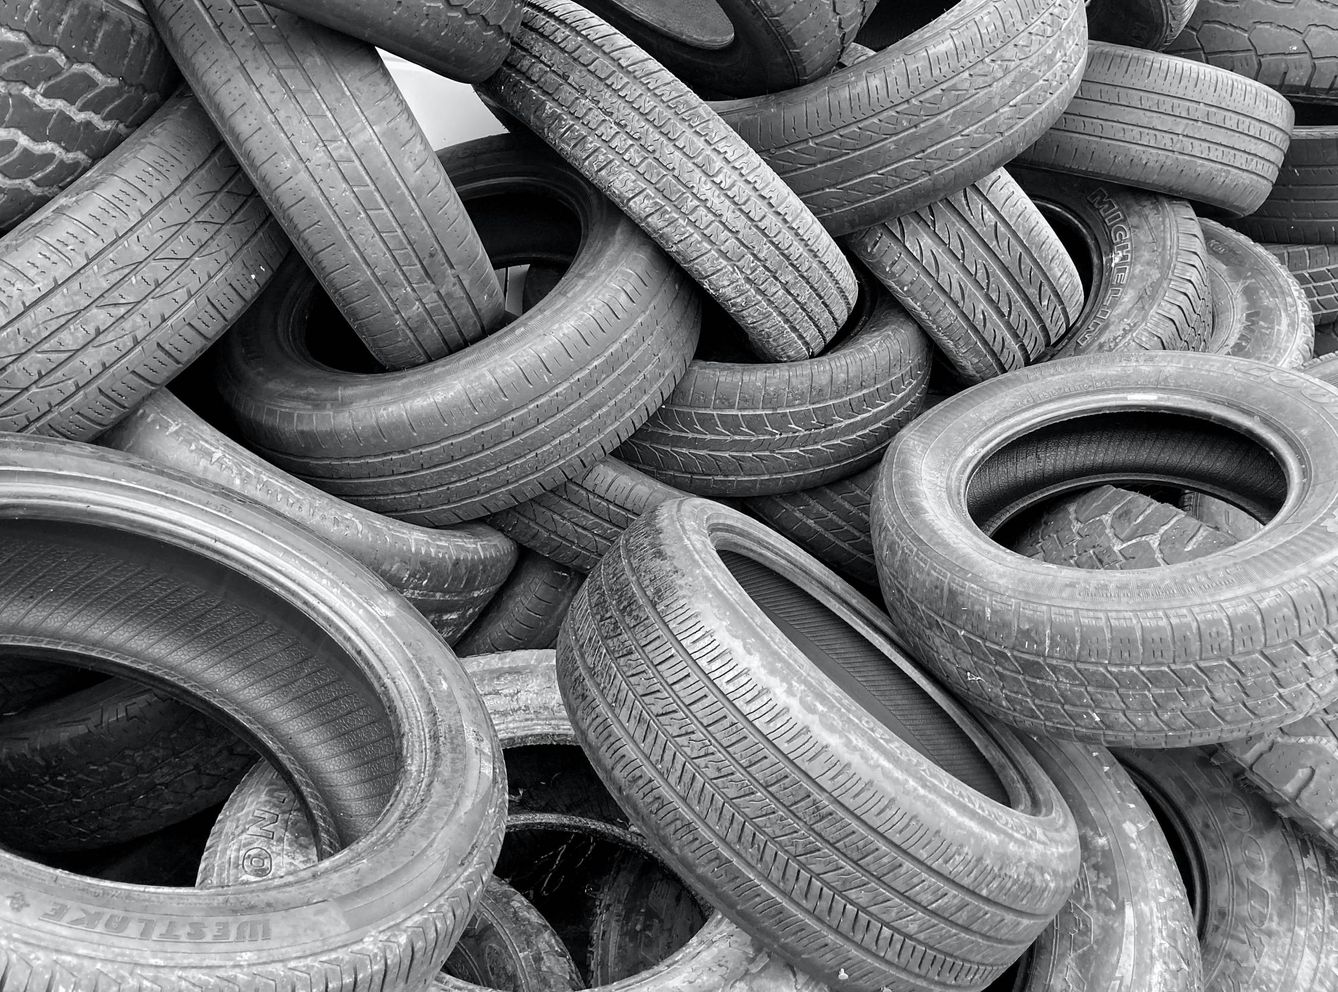 Se espera que a lo largo de este año se eliminen las toneladas de neumáticos usados que quedan. (Unsplash)